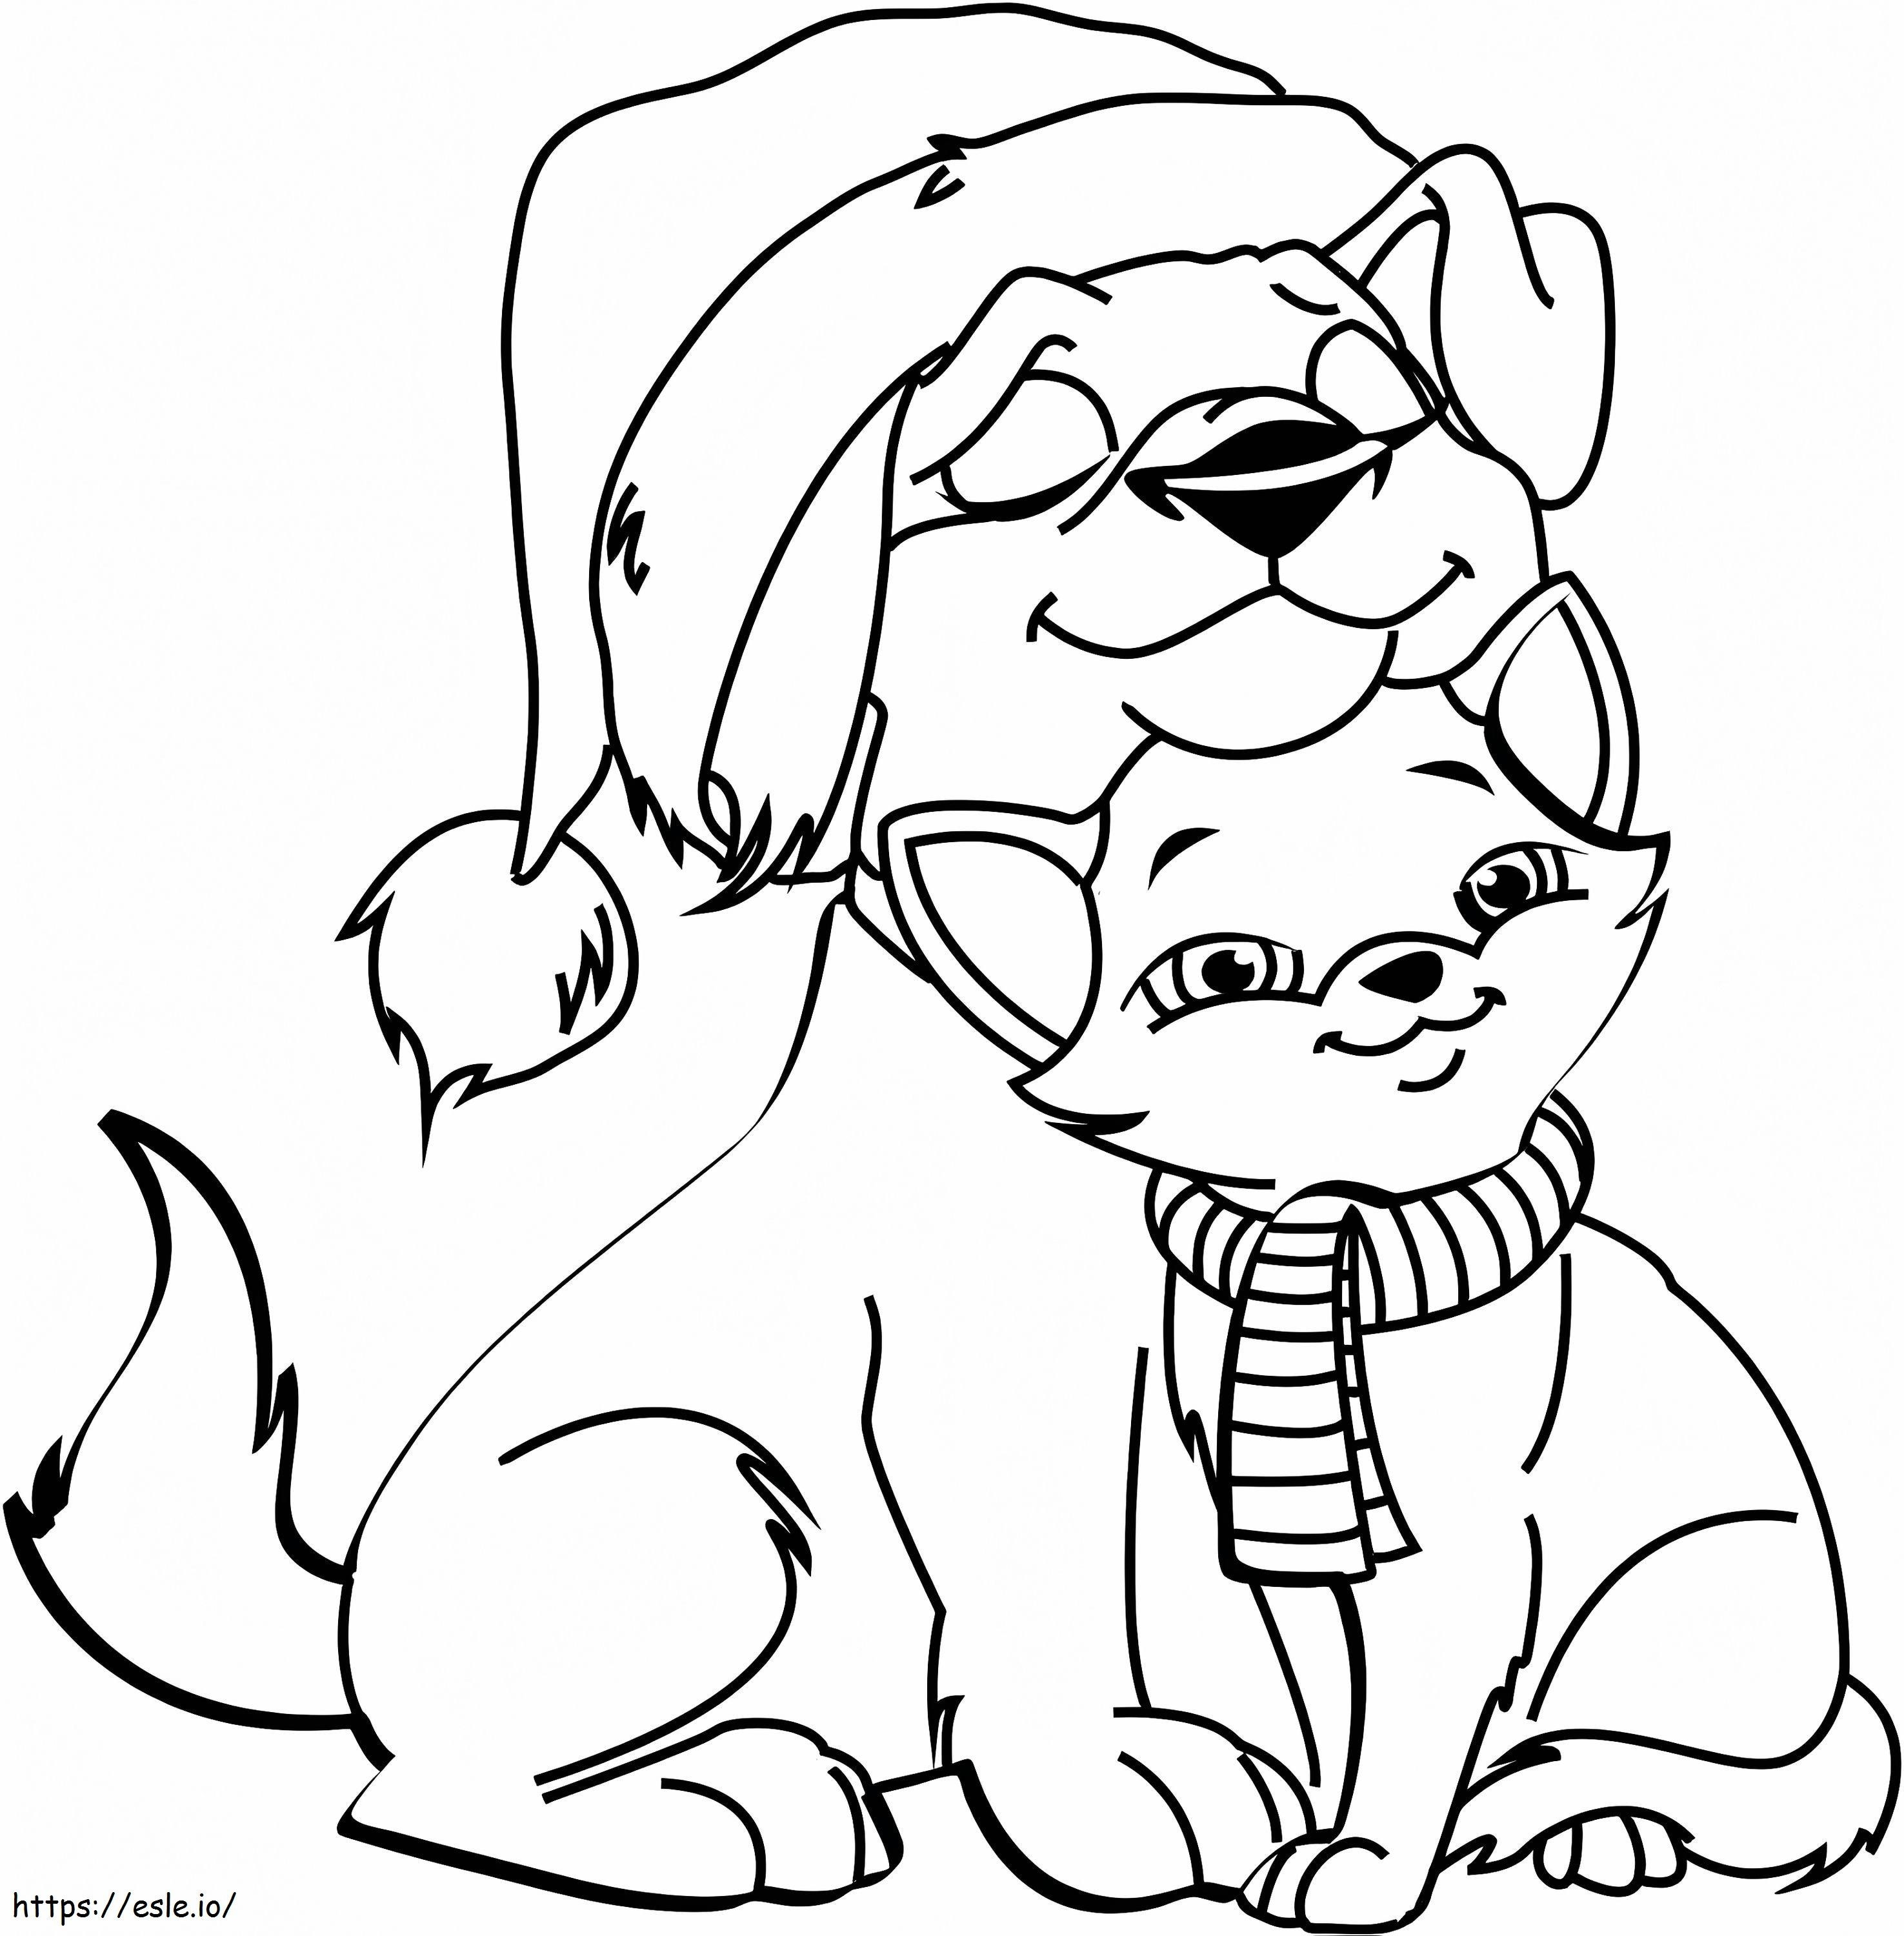 Hund und Katze zu Weihnachten ausmalbilder